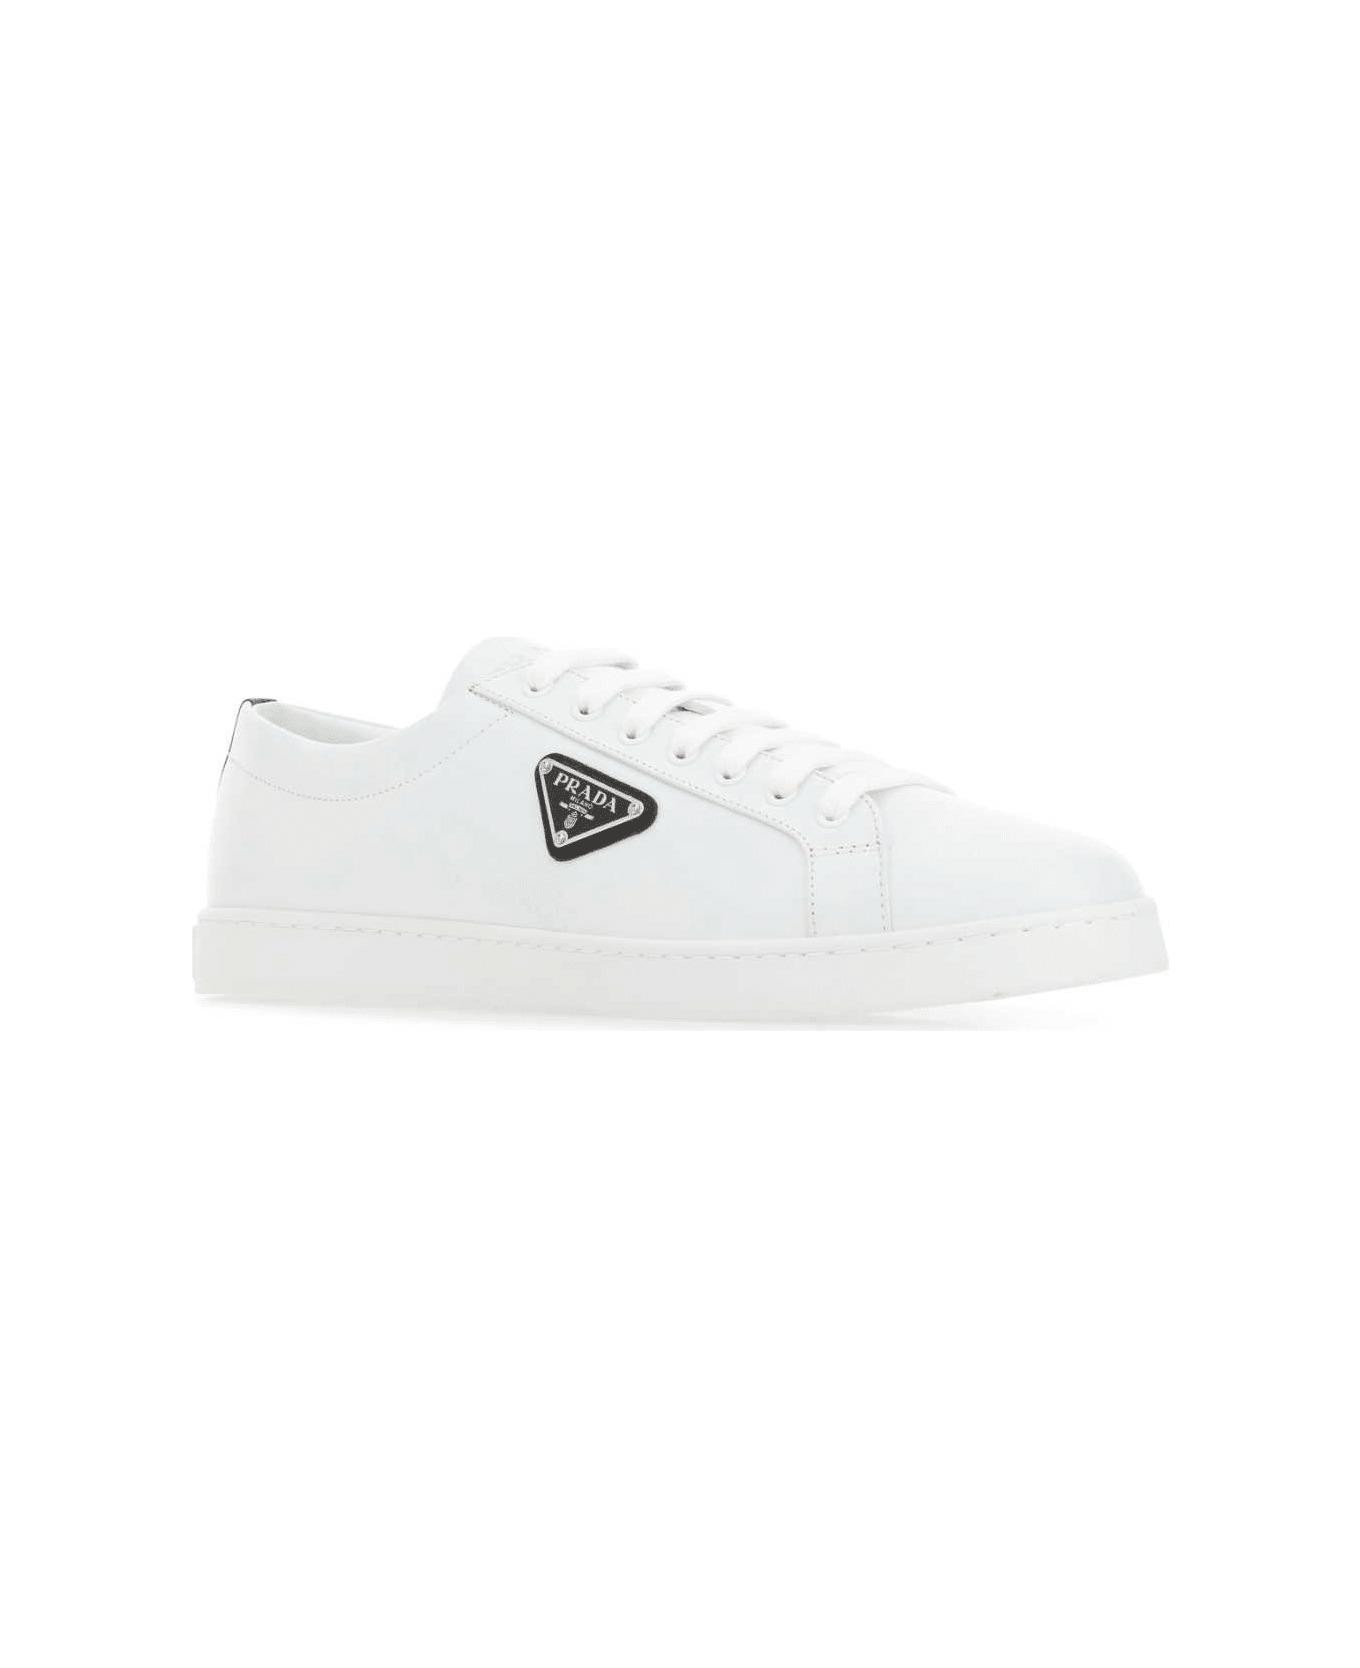 Prada White Leather Sneakers - Multicolor